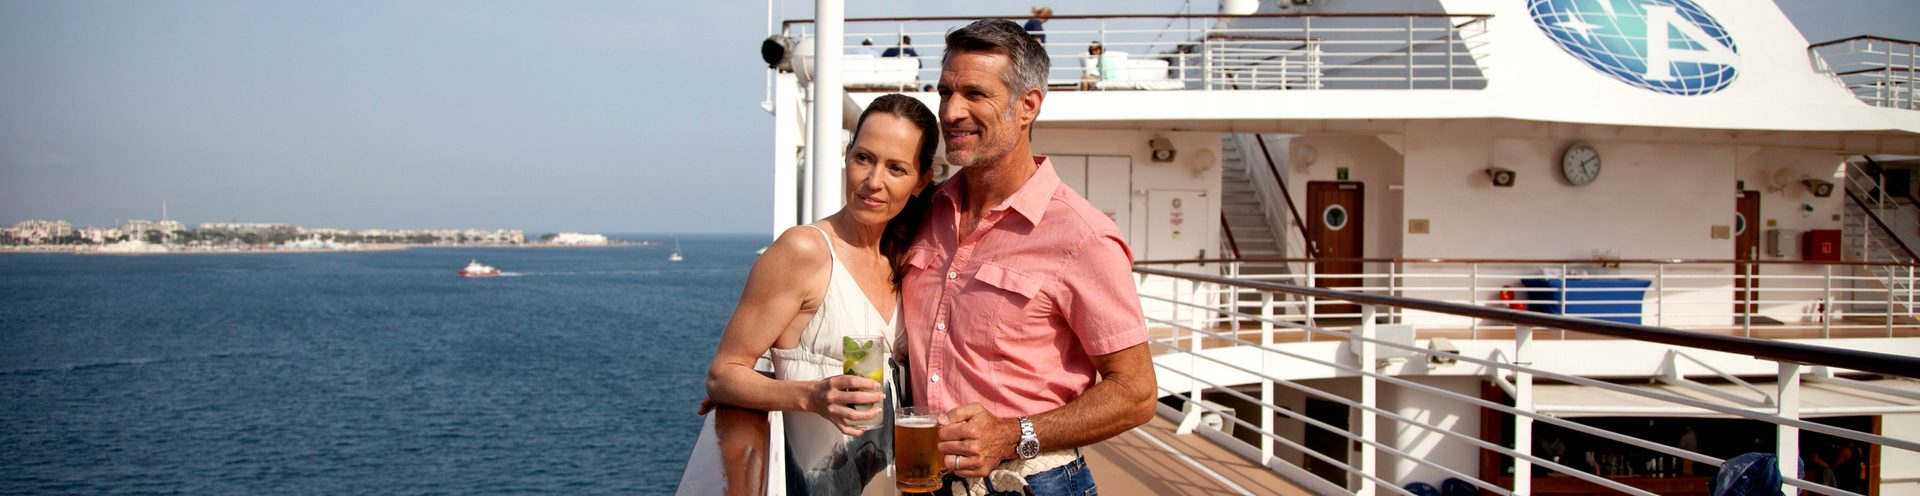 „Explore Further“: Azamara Club Cruises přichází s novou kampaní, svým hostům nabídne ještě autentičtější zážitky